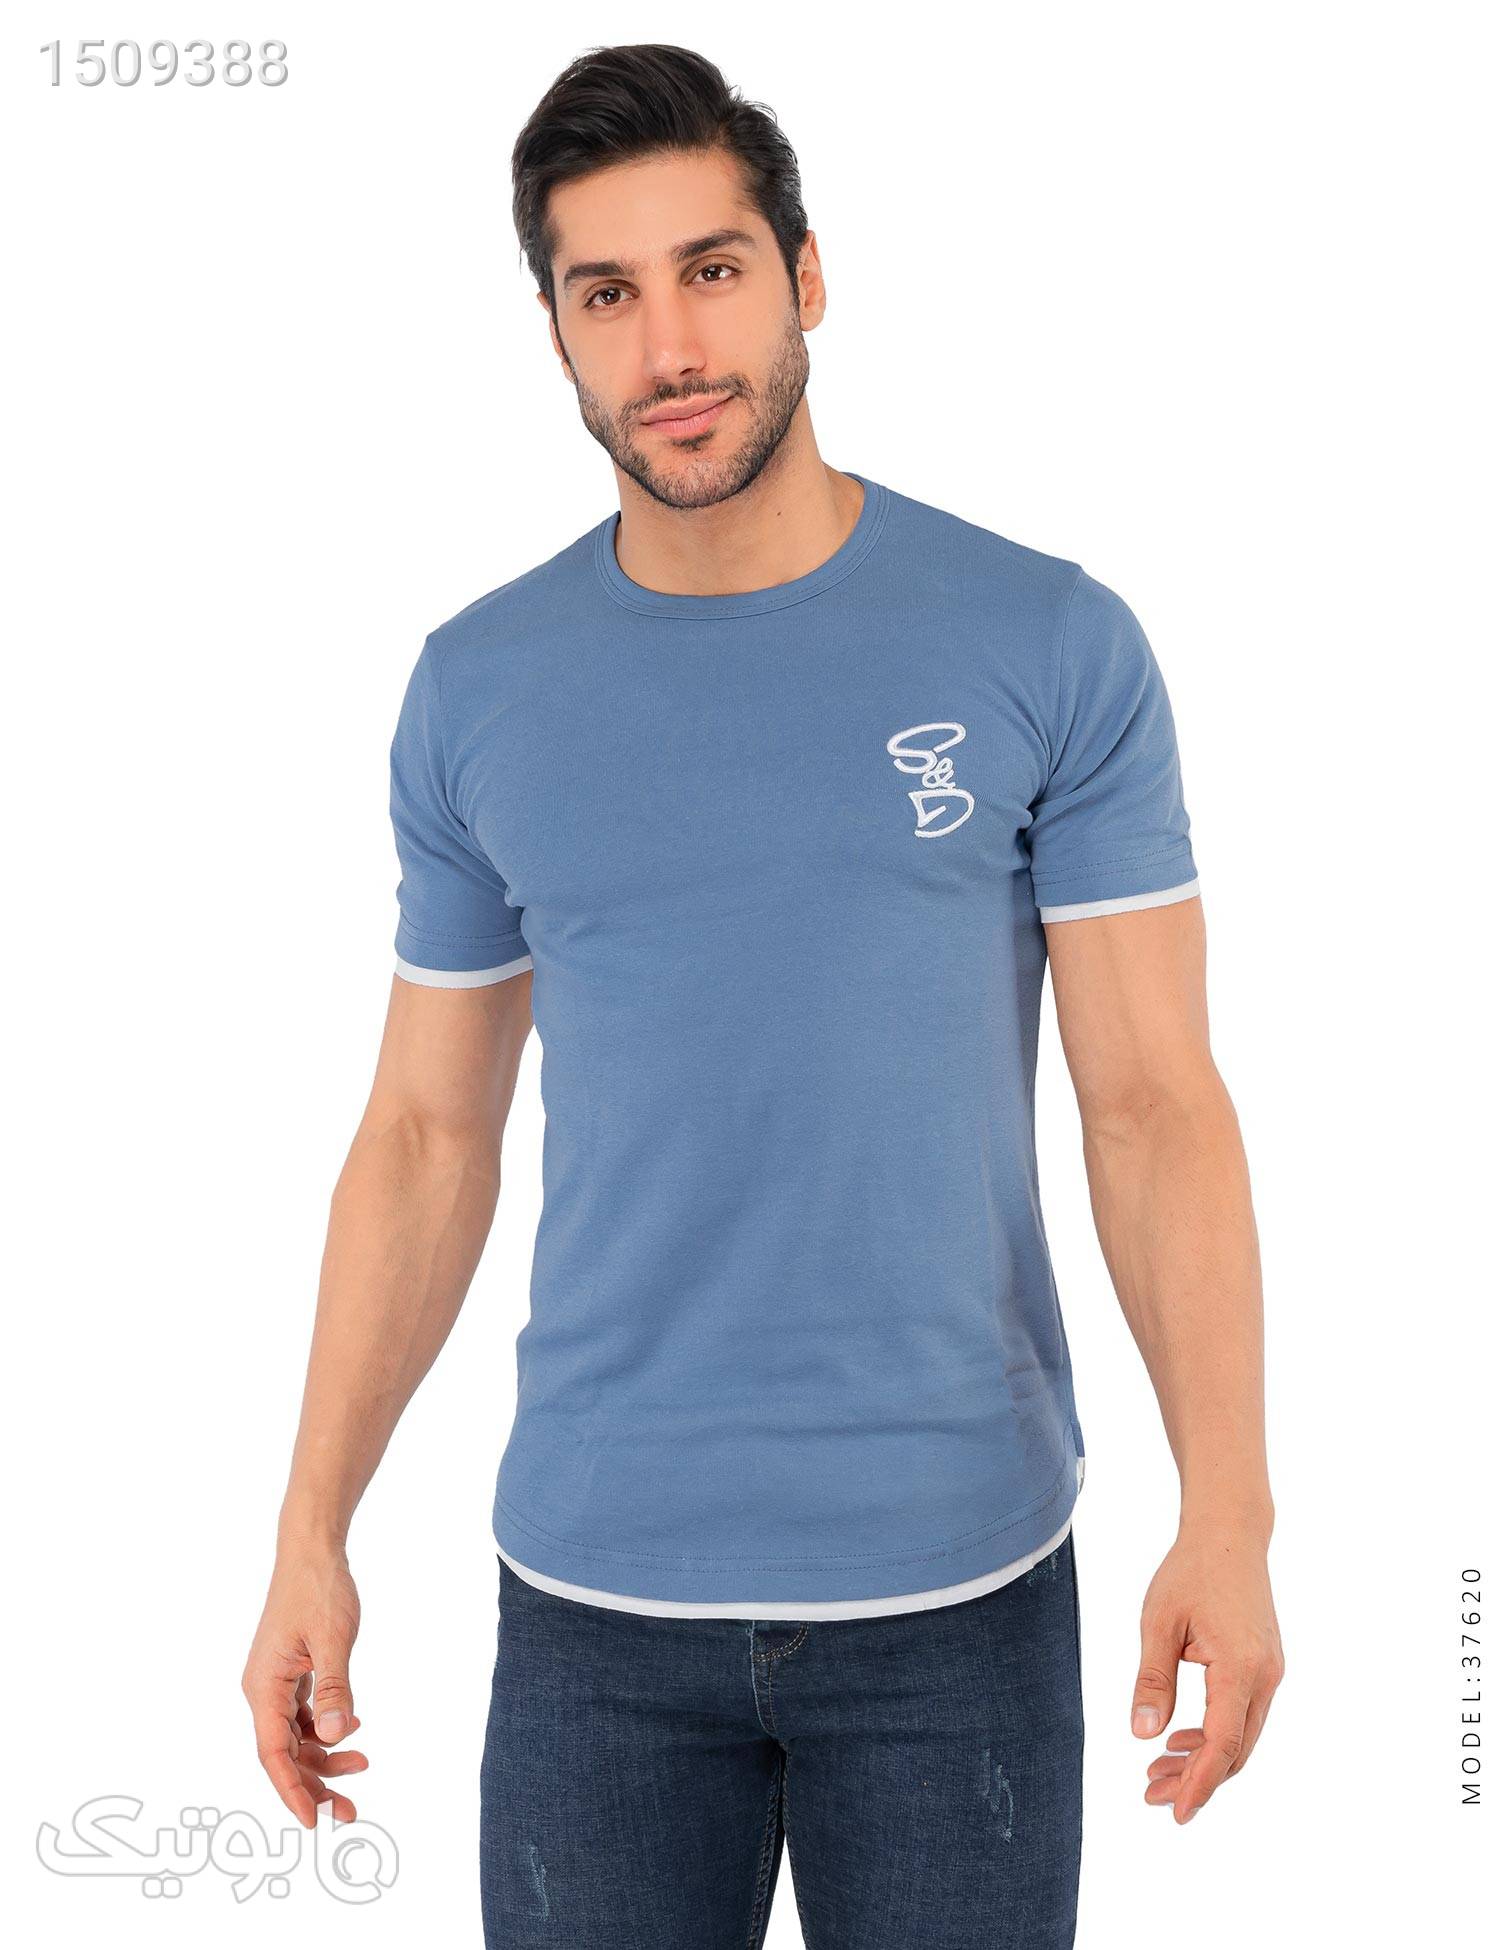 تیشرت مردانه DG مدل 37620 آبی تی شرت و پولو شرت مردانه